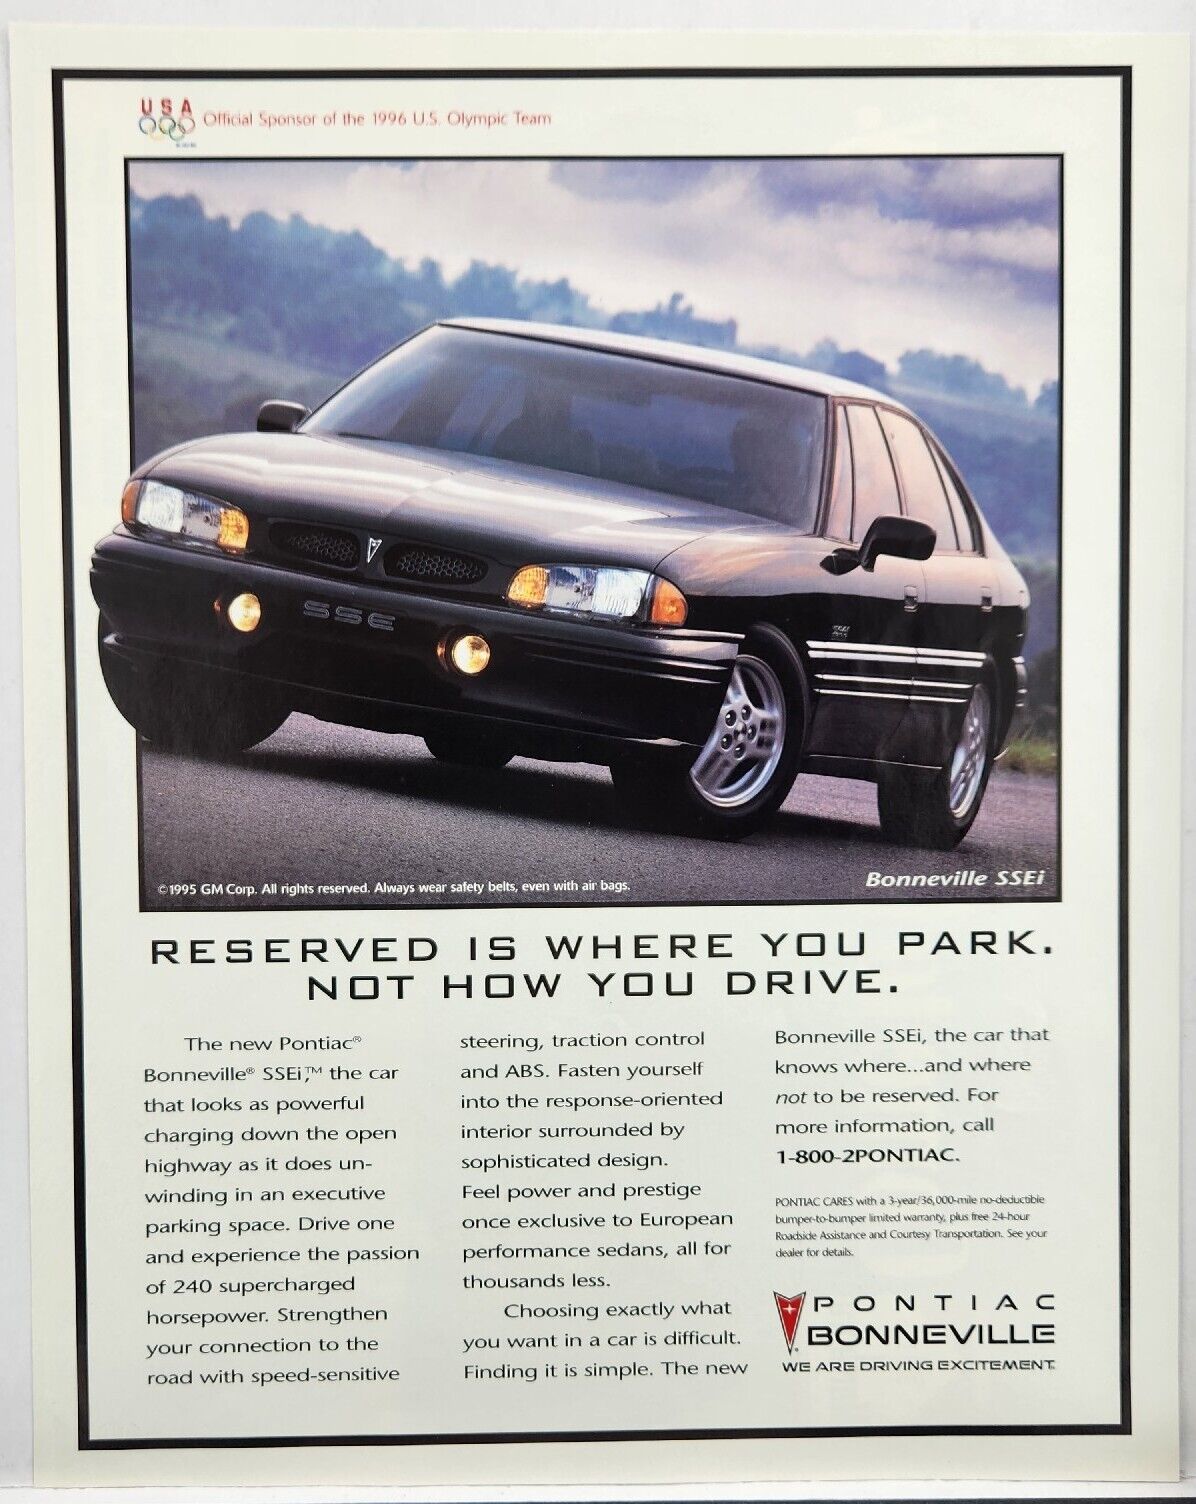 1995 Pontiac Bonneville SSEi Driving Excitement Vintage Poster Print Ad